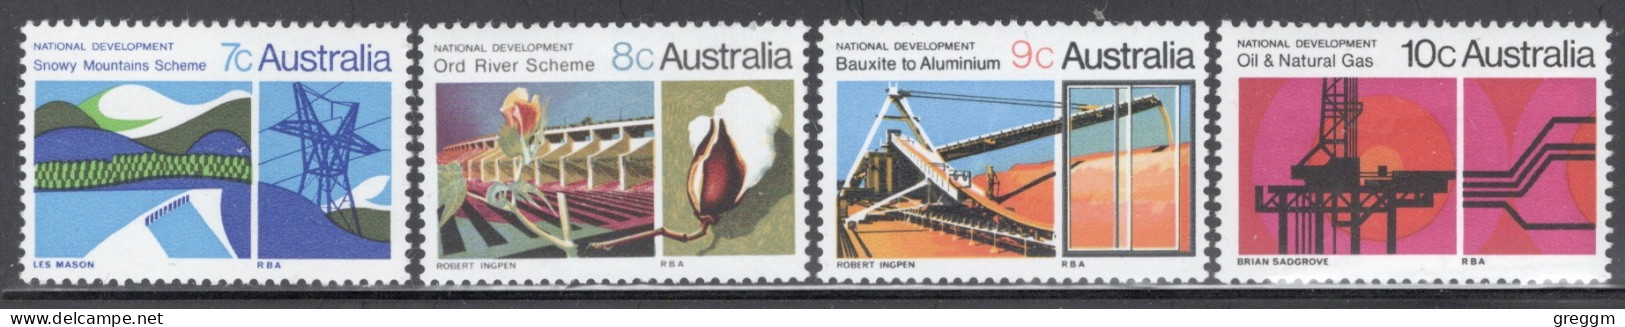 Australia 1970 Queen Elizabeth Set National Development In Unmounted Mint. - Mint Stamps